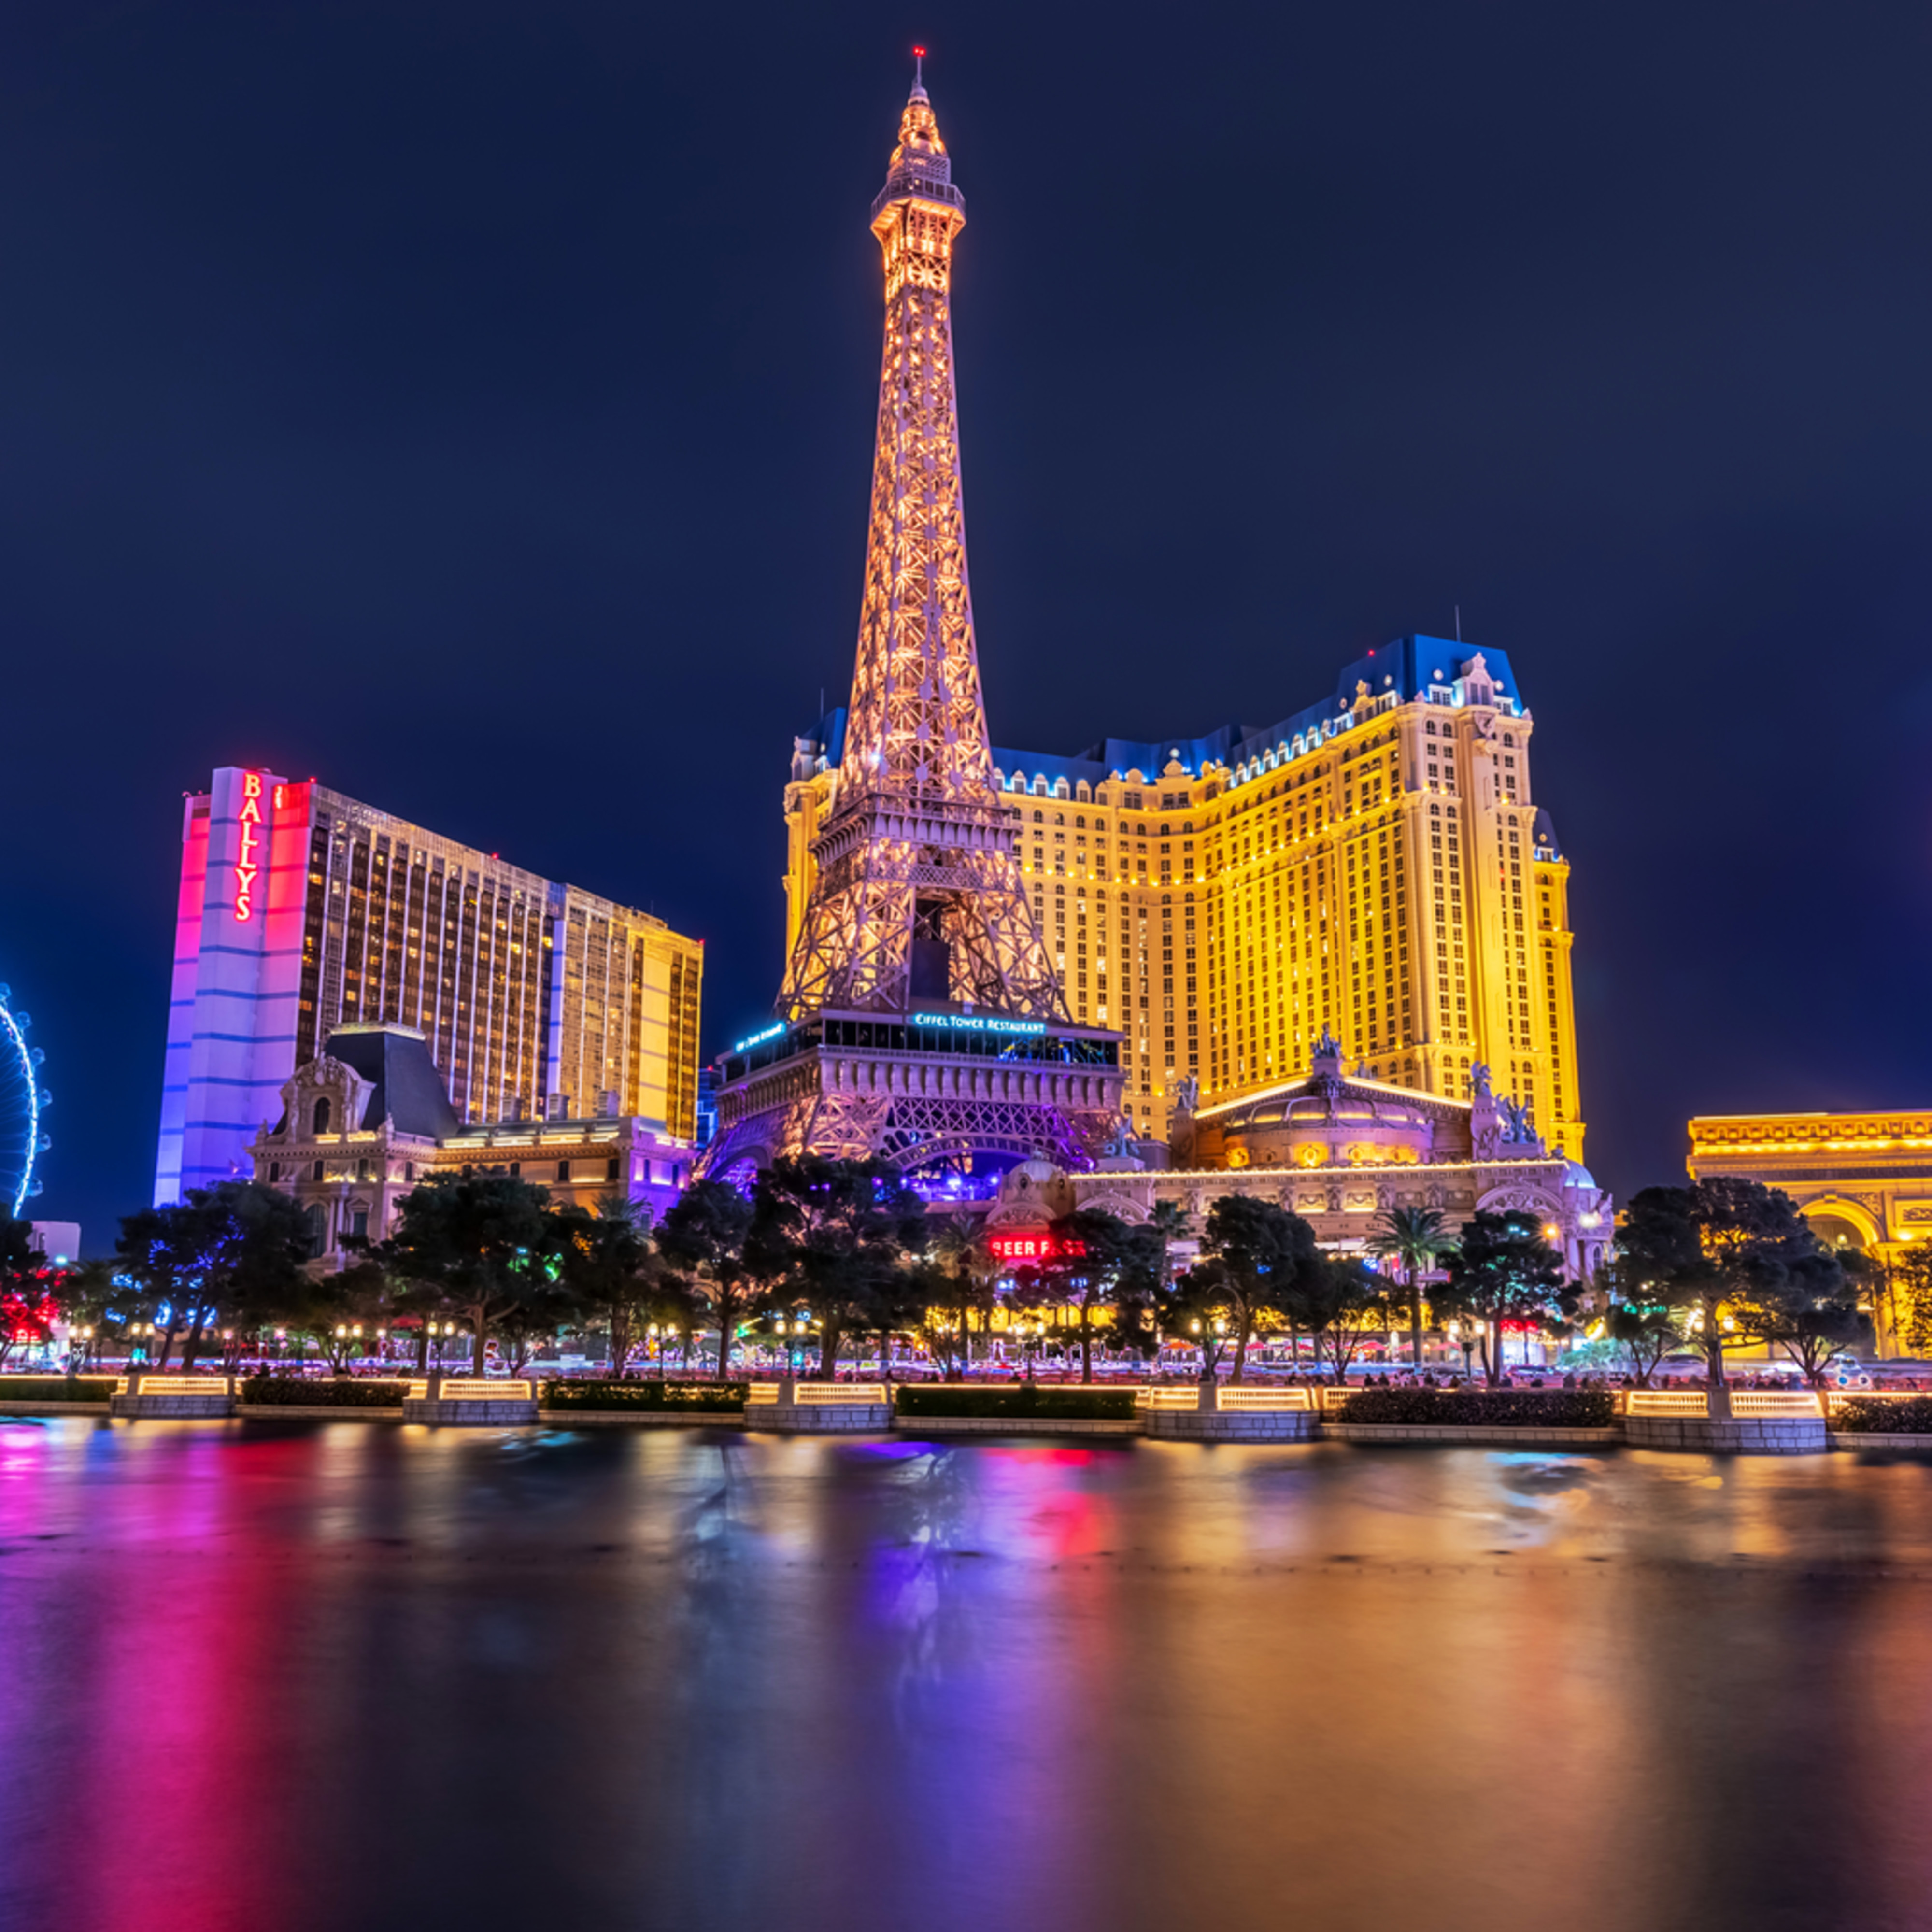 Paris Hotel Las Vegas - Pictures of Las Vegas Nevada | William Drew